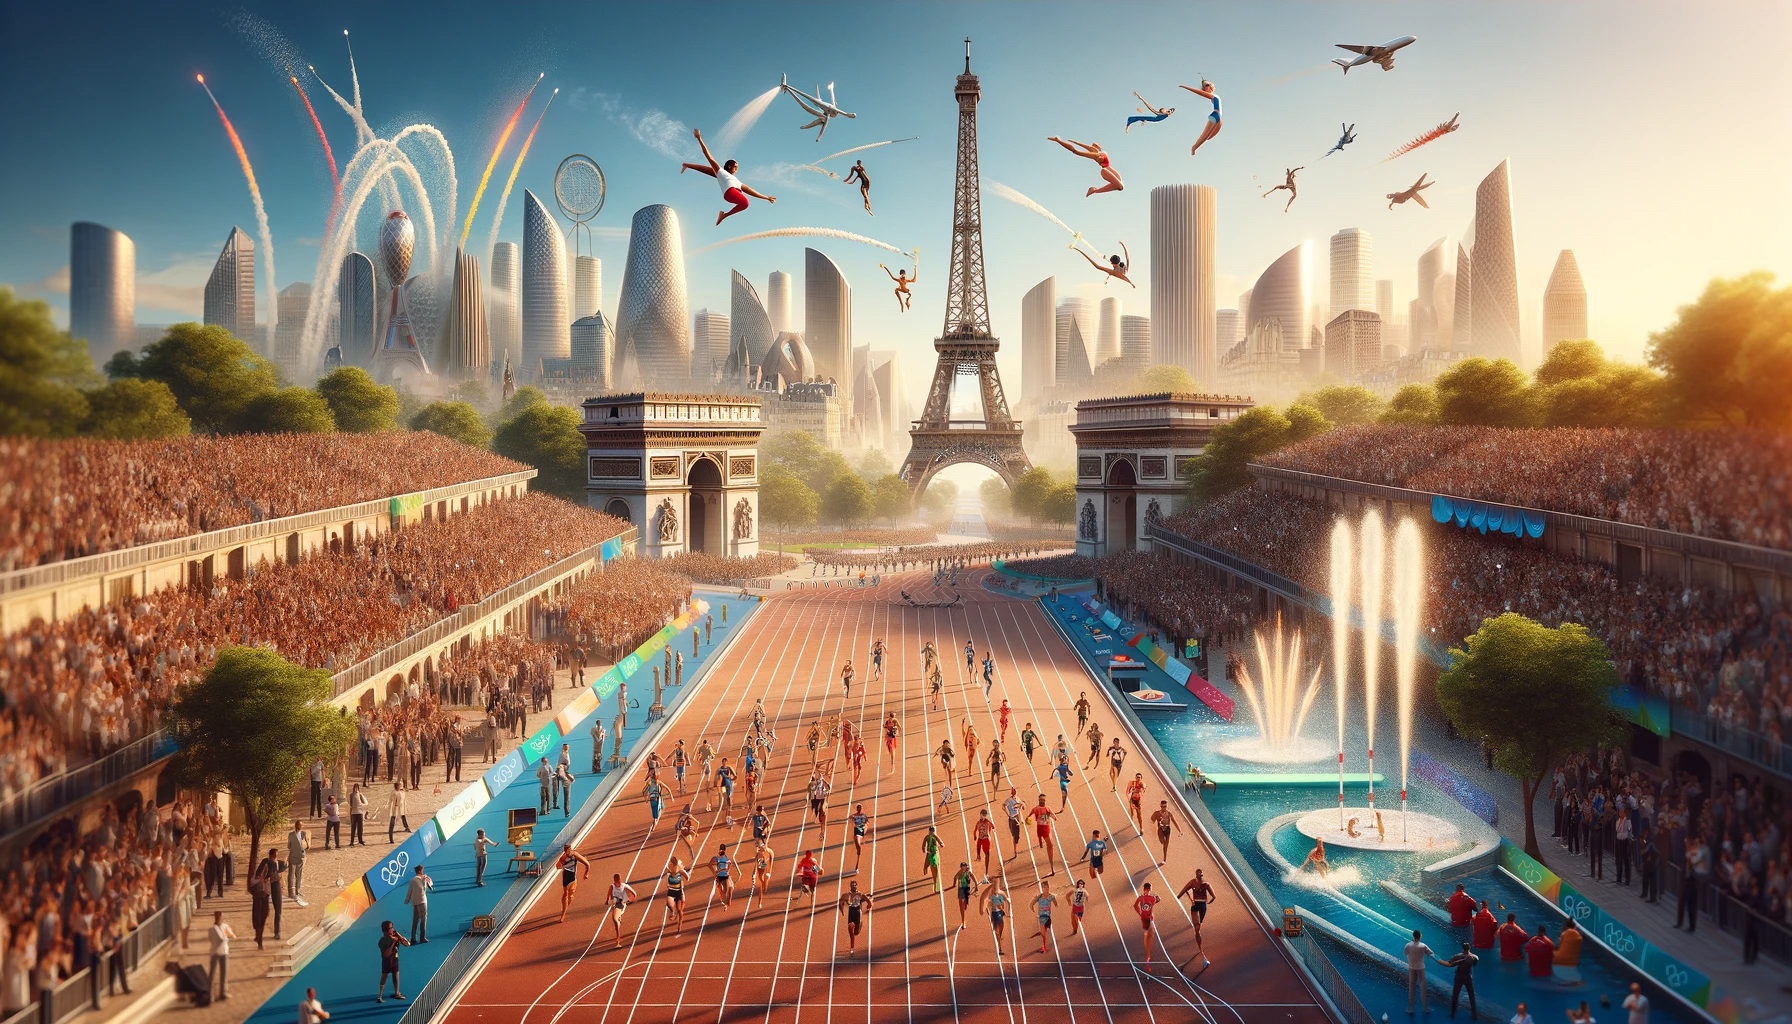 Jeux Olympiques de Paris 2024 : le guide pour l'escalade